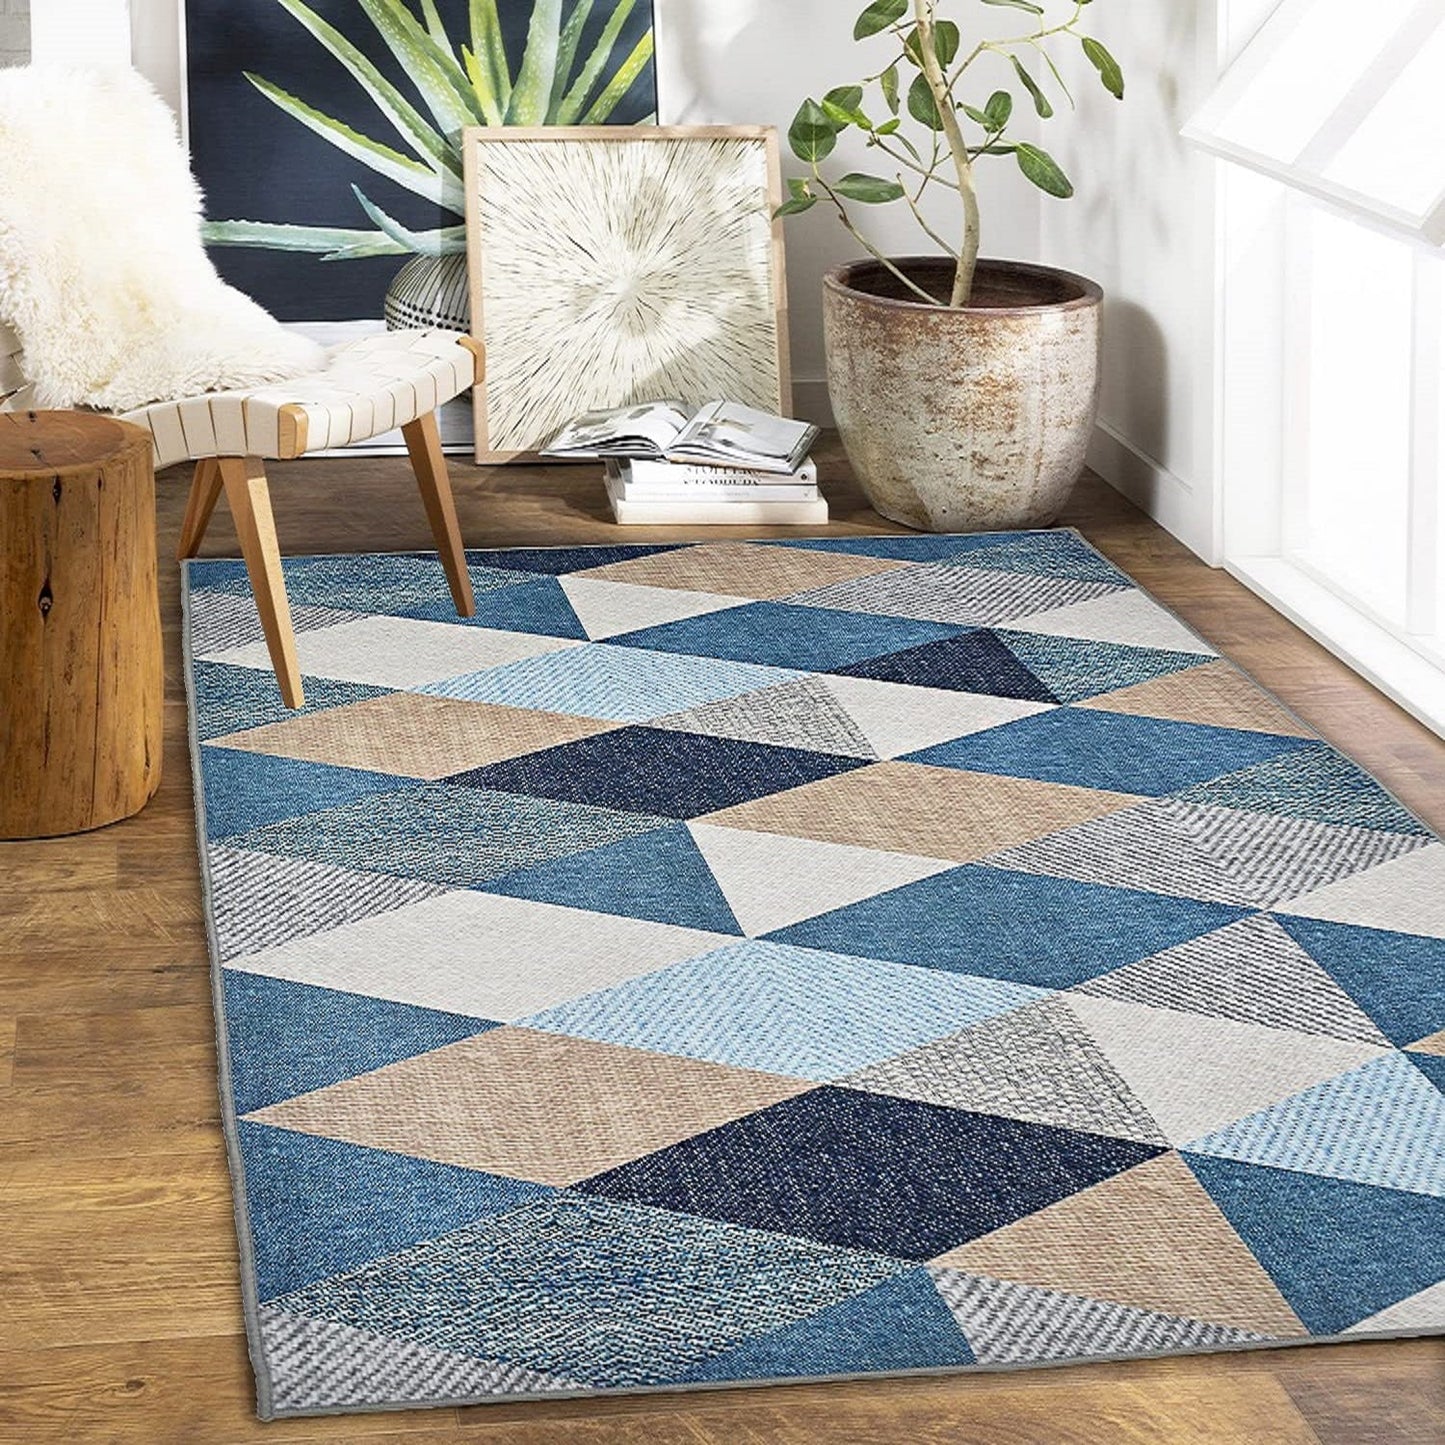 Ishro Home Premium Anti-Skid Carpets